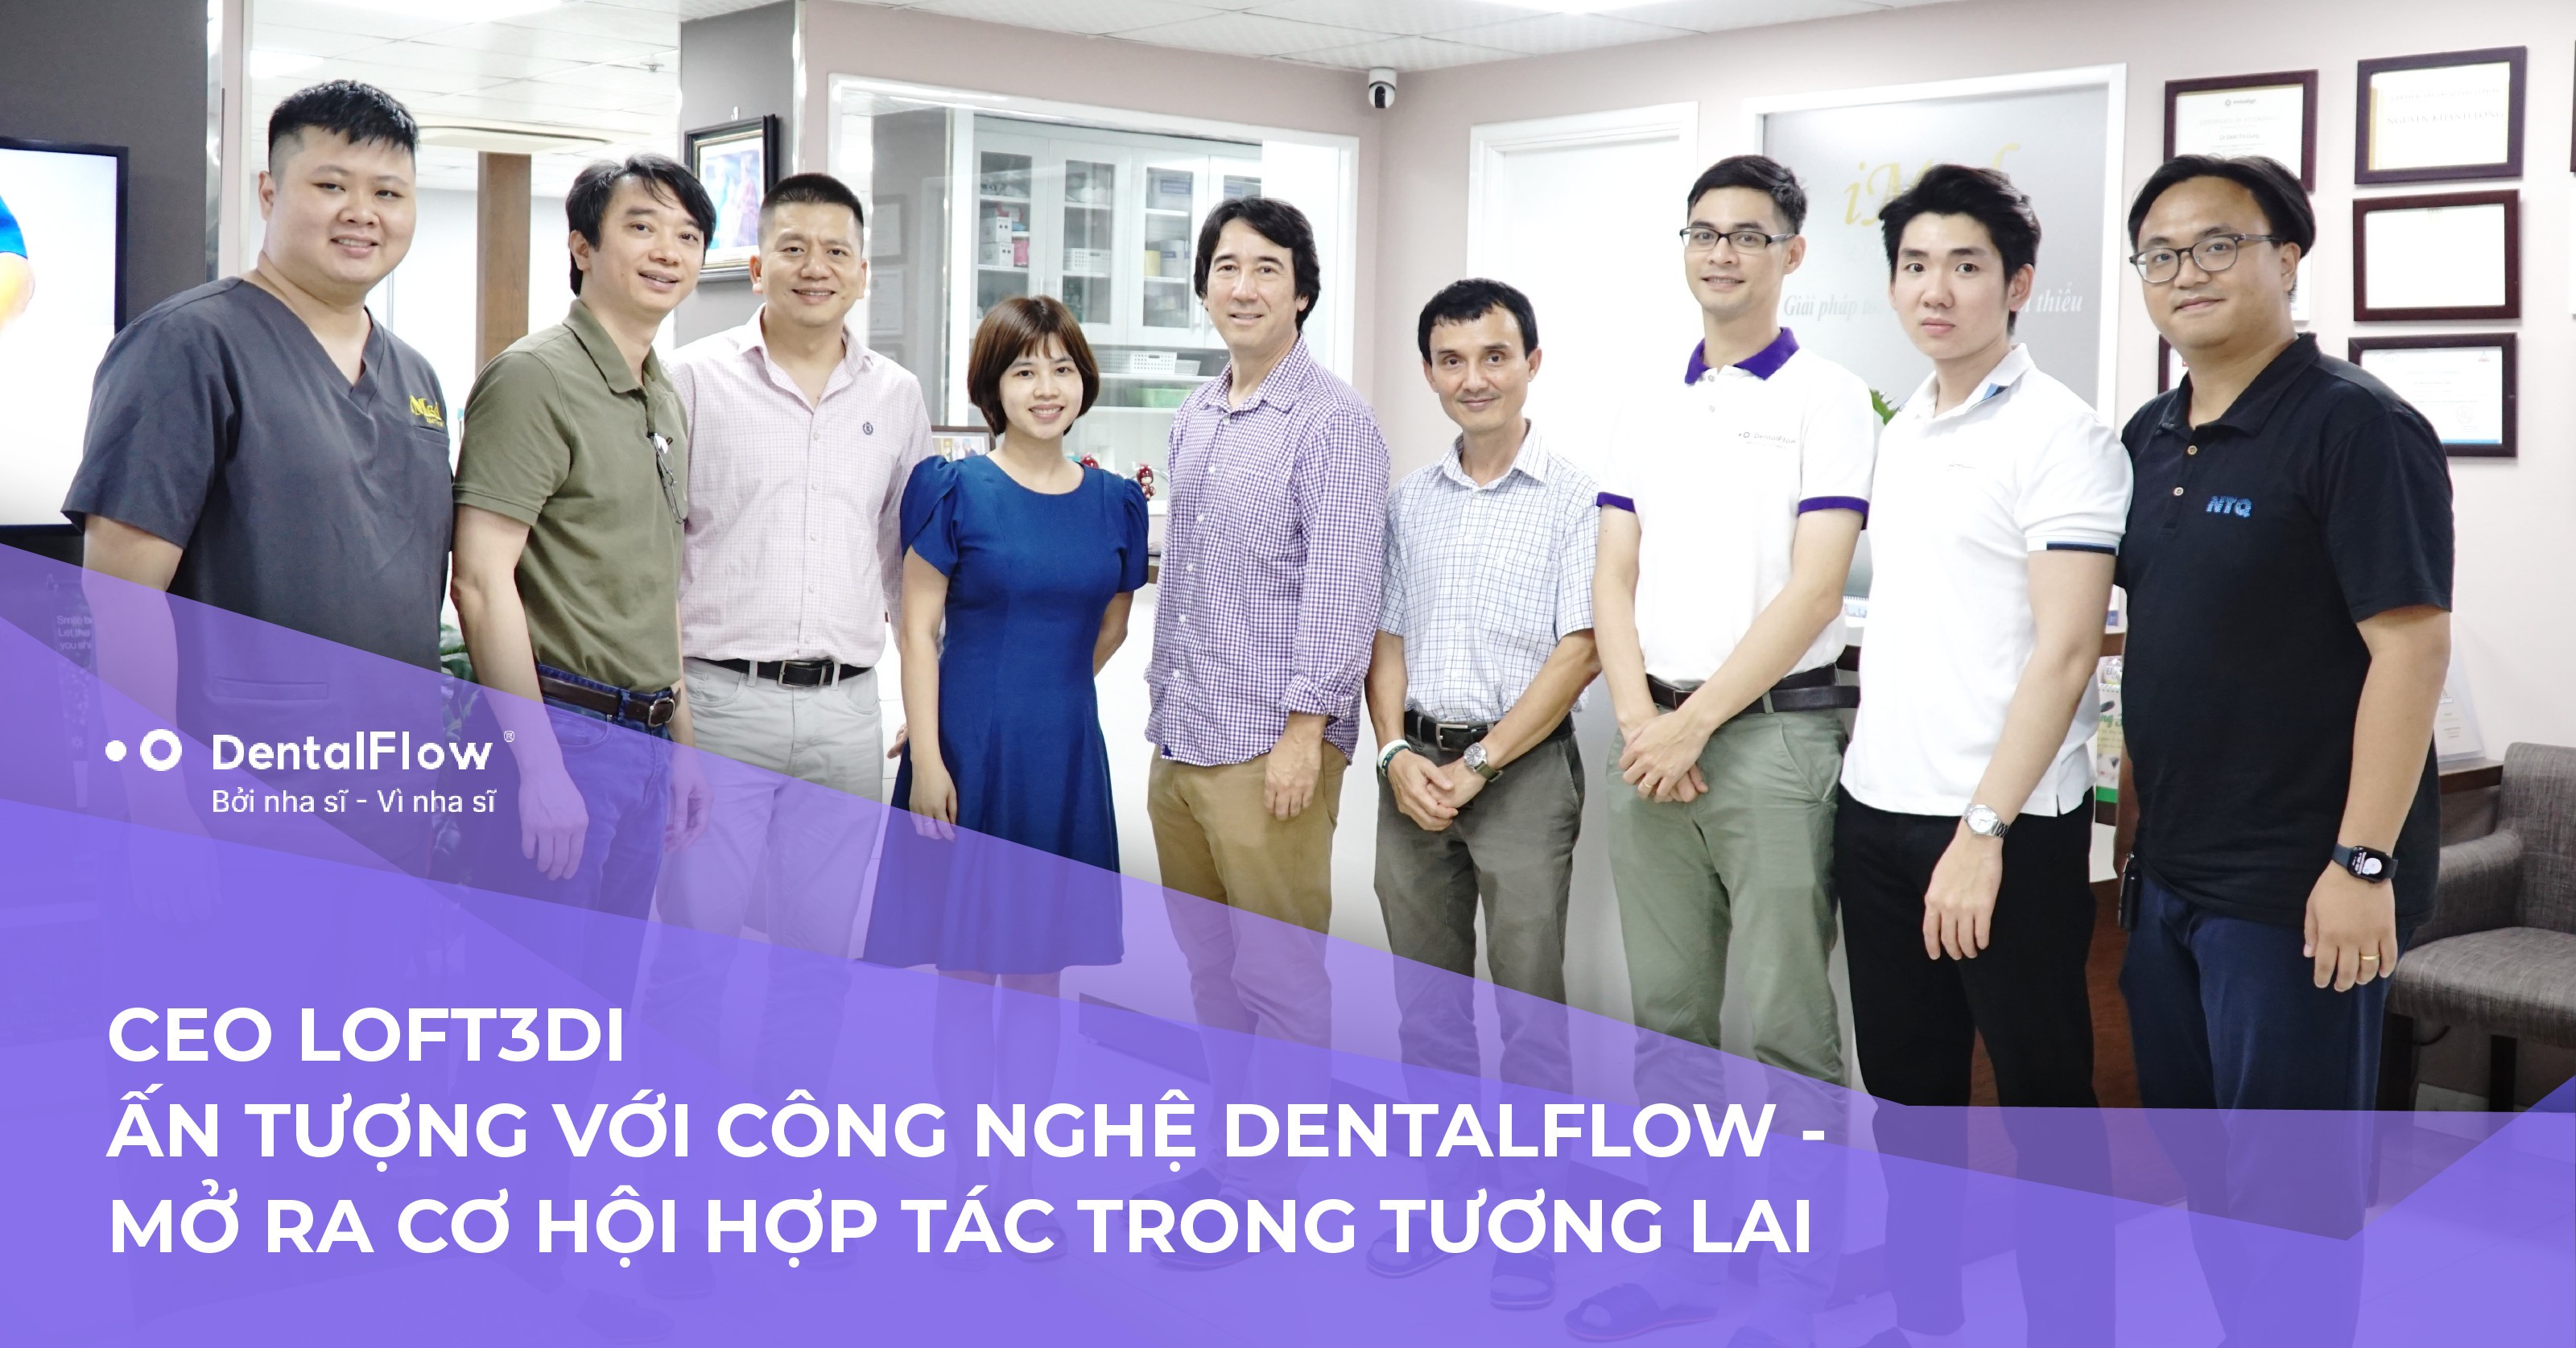 CEO Loft3di ấn tượng với công nghệ của DentalFlow – Mở ra cơ hội hợp tác trong tương lai